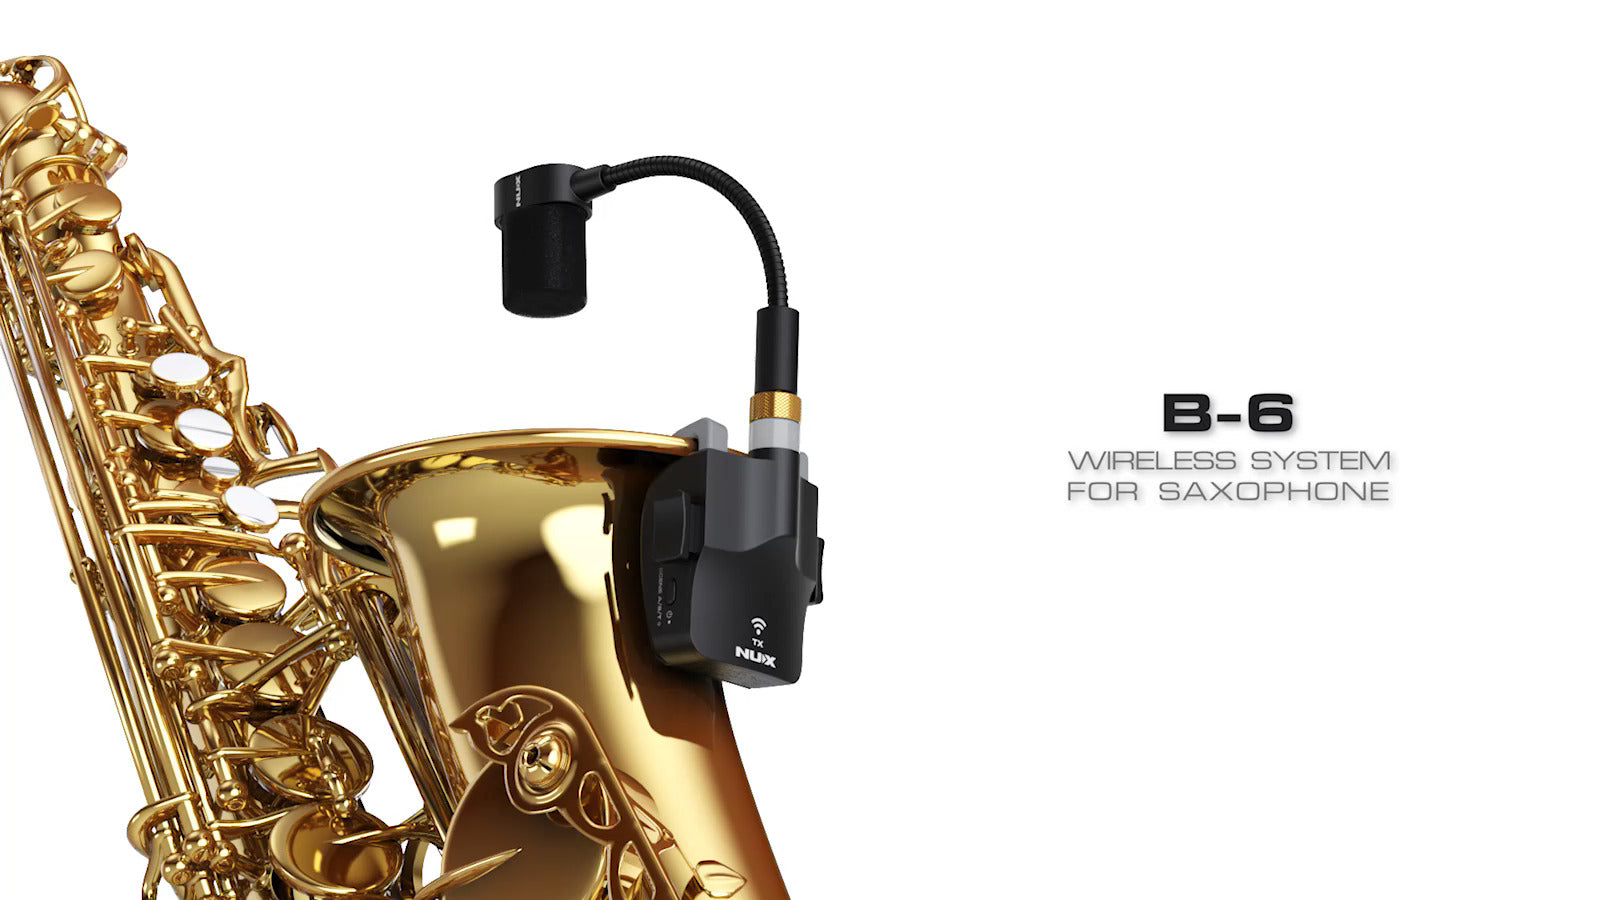 NUX B-6 B6S 2.4GHz Wireless System for Saxophone 24bit/44.1kHz Digital Audio